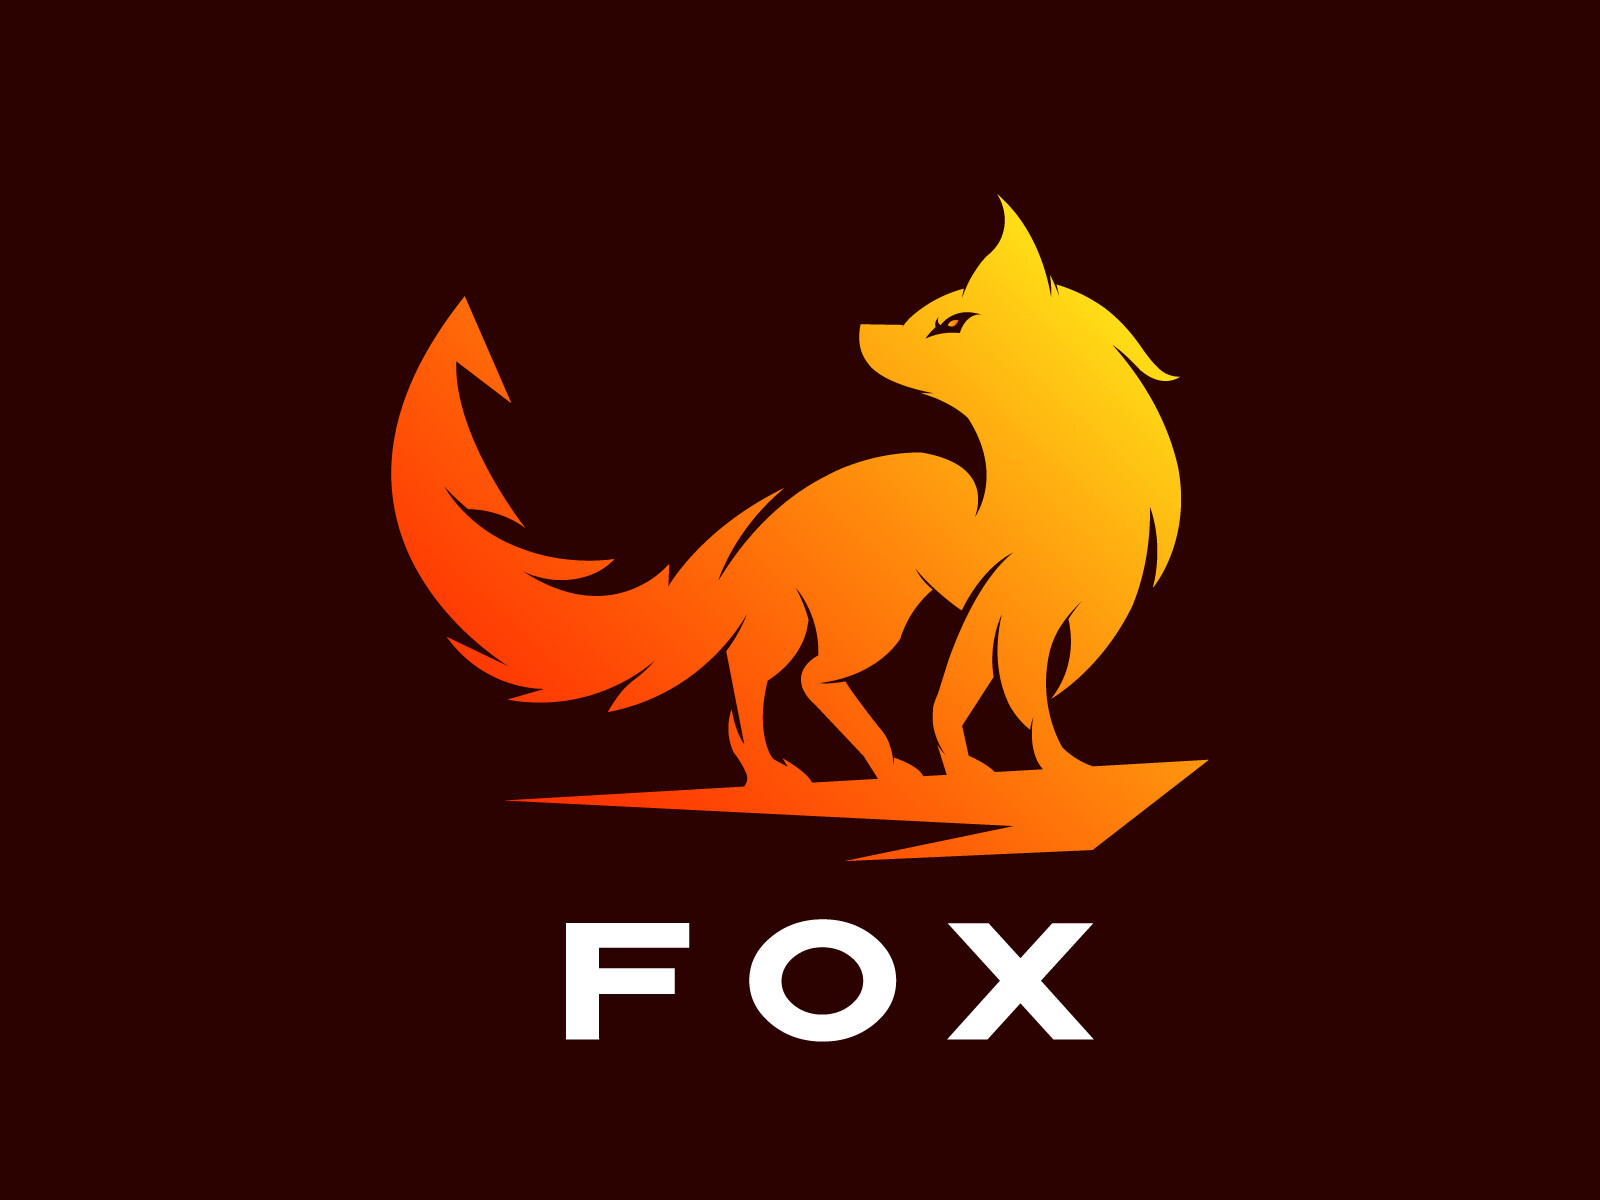 ArtStation - Fox logo for sale